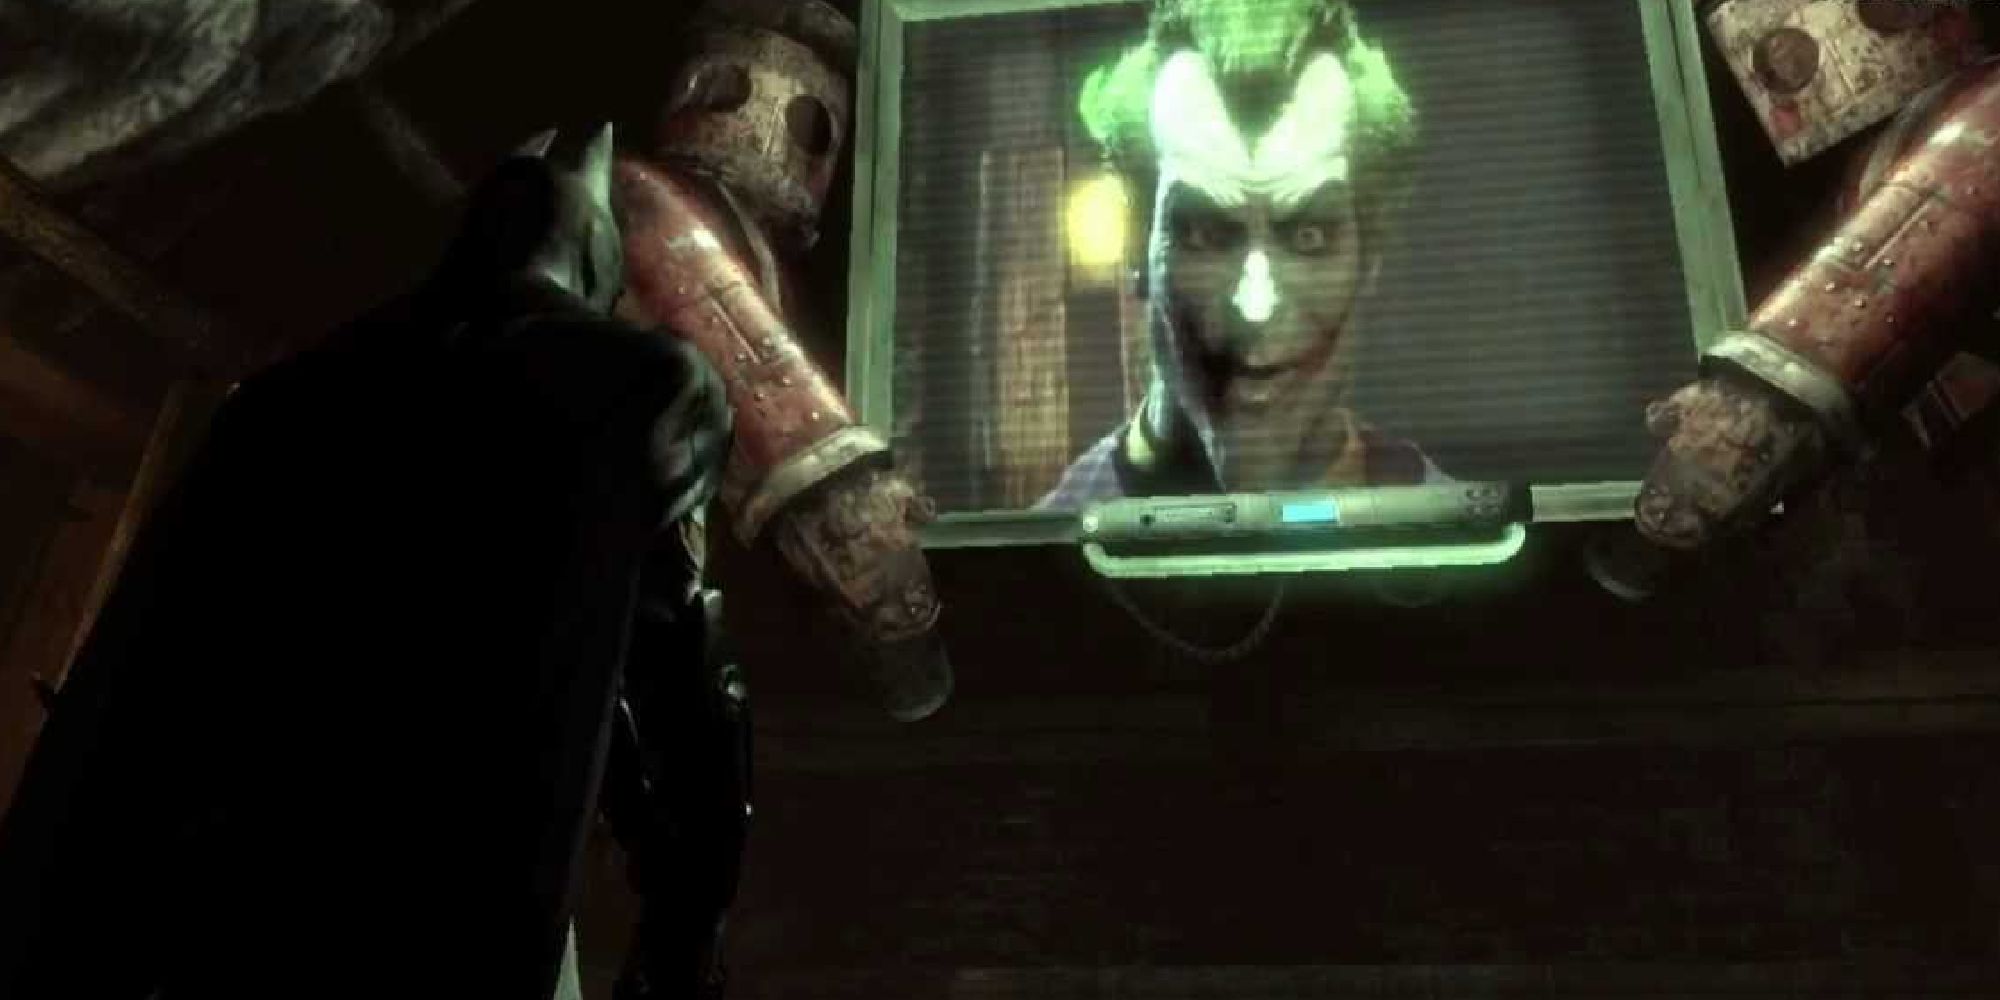 Джокер появляется на экране телевизора и разговаривает с Бэтменом.